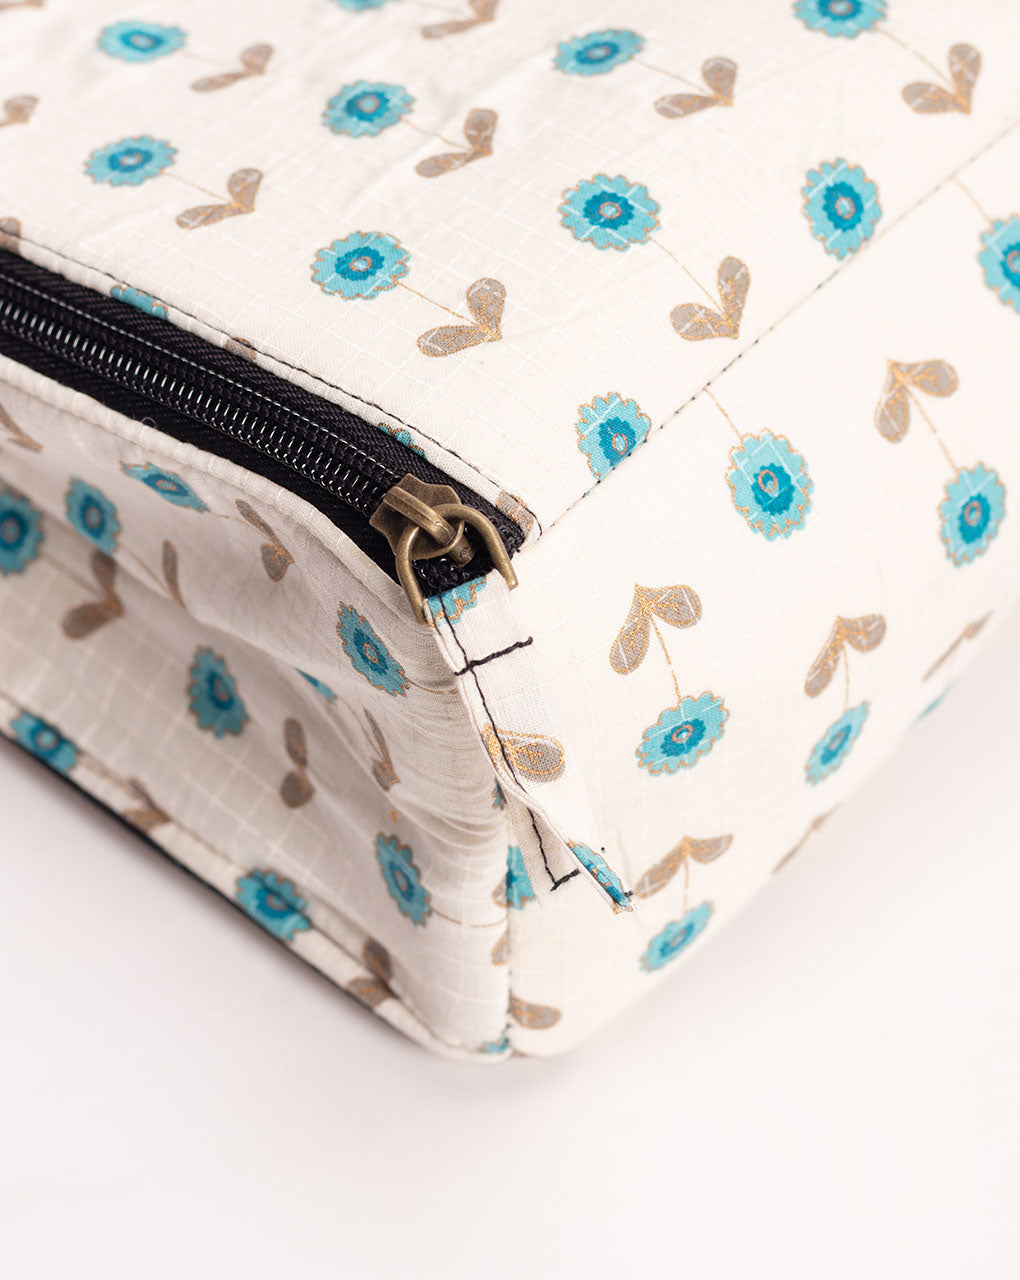 Floral Fabric Purse - Vintage Boho Bag - Ornate Stylish Minimalist Design  Metal Handle Purse